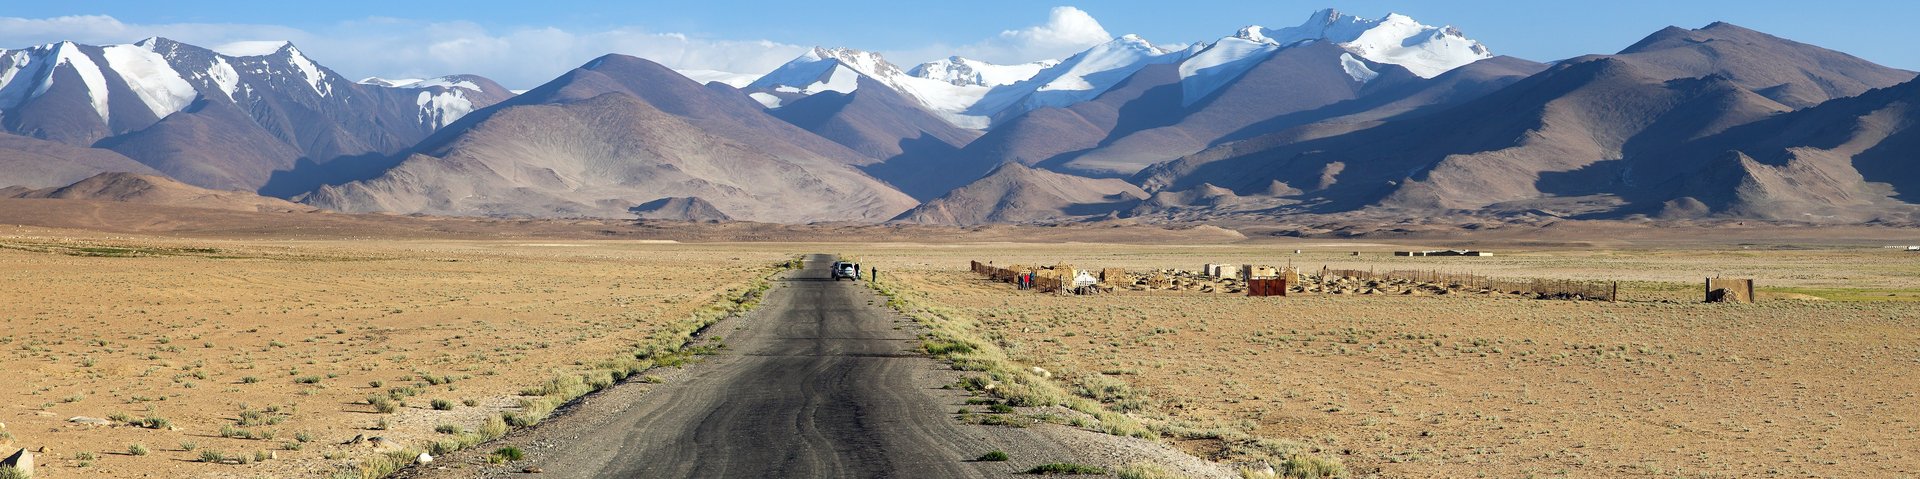 Endlose Strasse des Pamir Highway in Richtung Berge in Tadschikistan